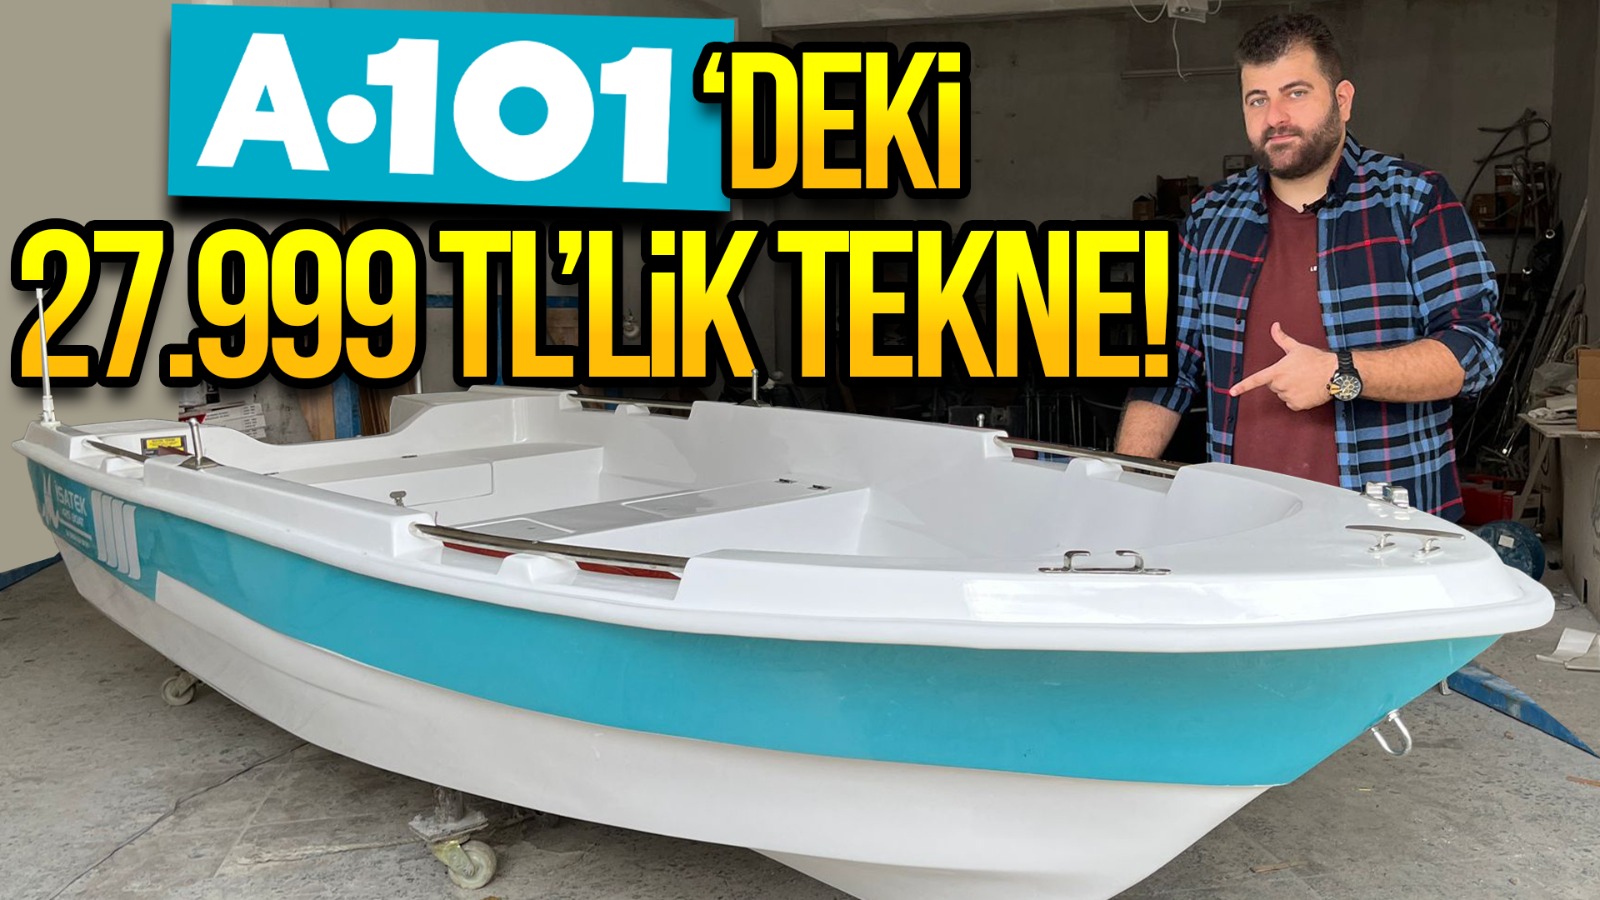 A101’de 27.999 TL’ye satılan tekneyi inceledik!